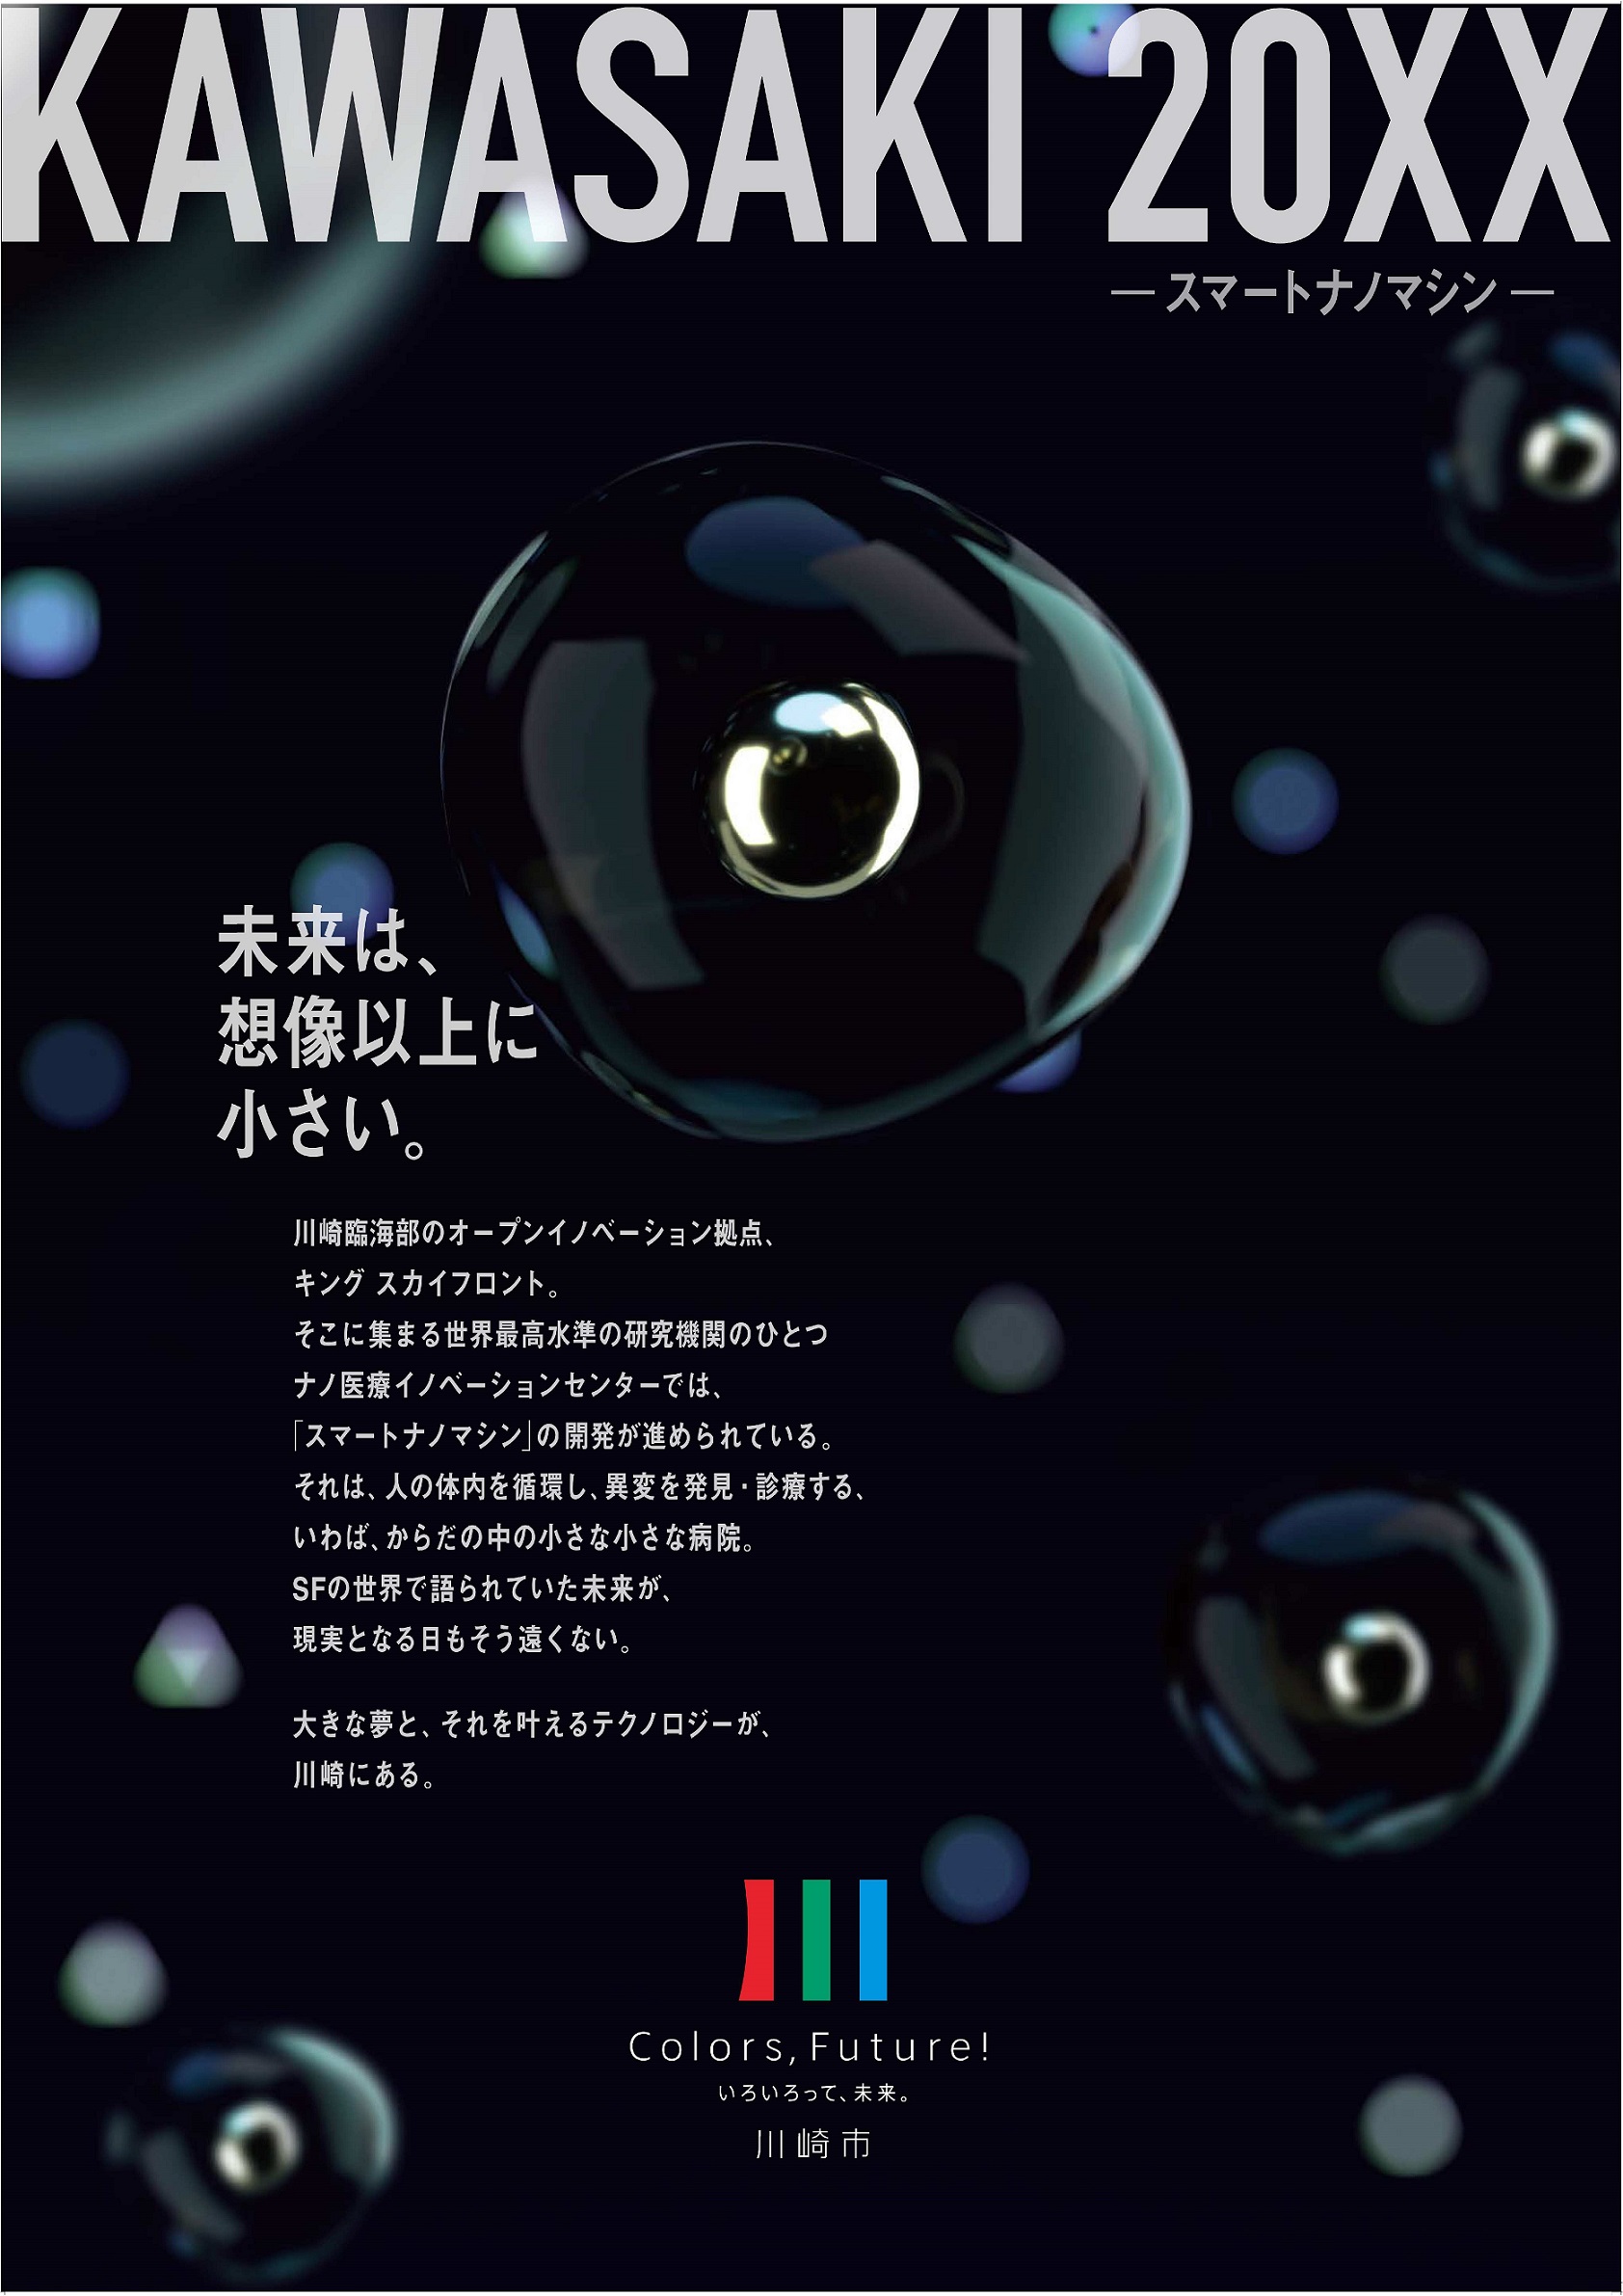 2020ブランドメッセージポスター_KAWASAKI20XX -スマートナノマシン- 未来は、想像以上に小さい。